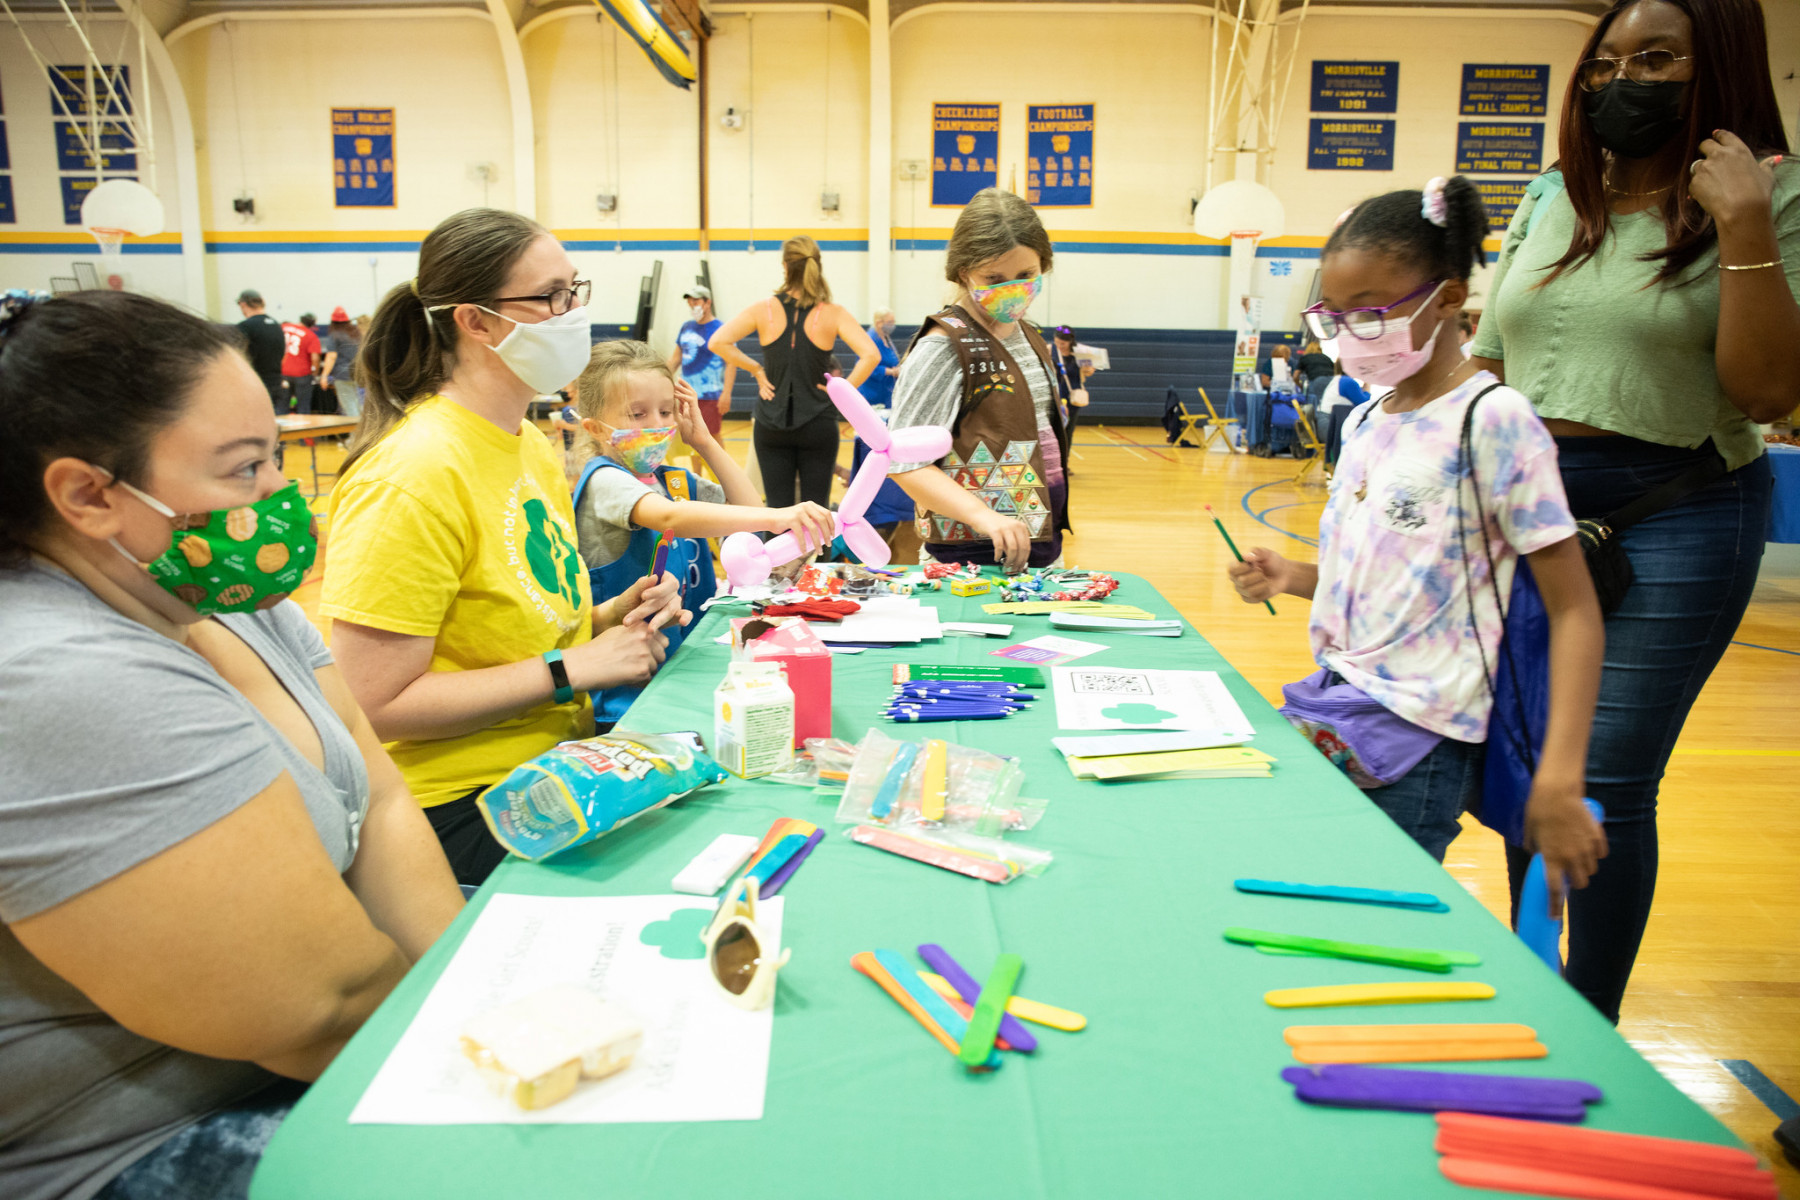 September 25, 2021: Senator Steve Santarsiero Hosts Annual KidsFest